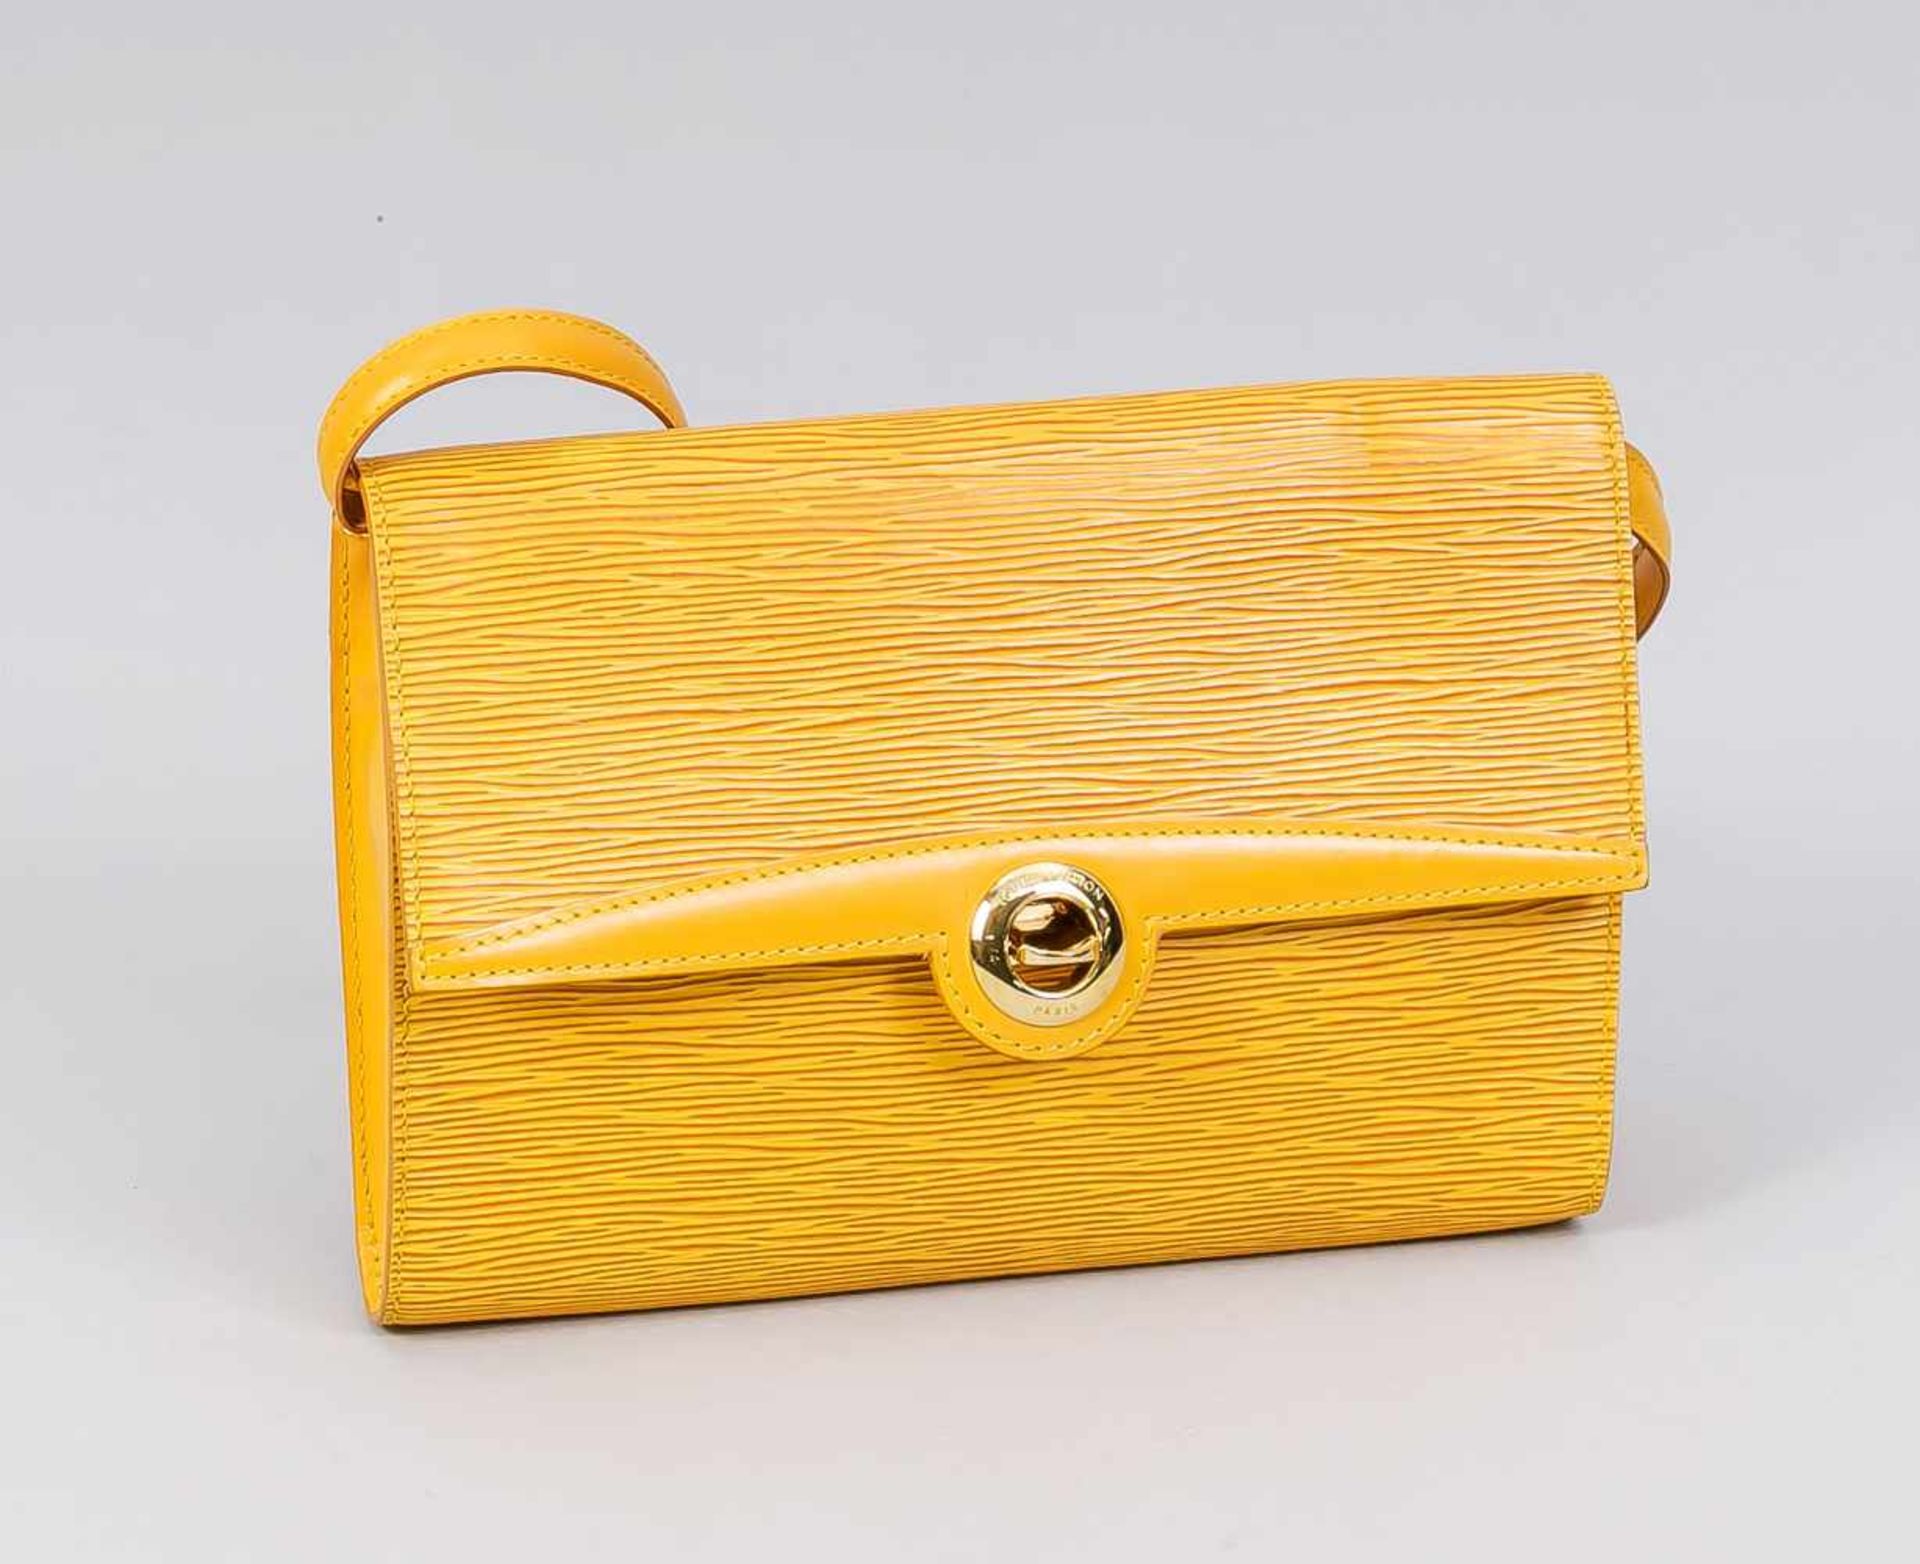 Handtasche Louis Vuitton Epi in Gelb, 20./21. Jh., vergoldete Schließe, schmaler Riemen,